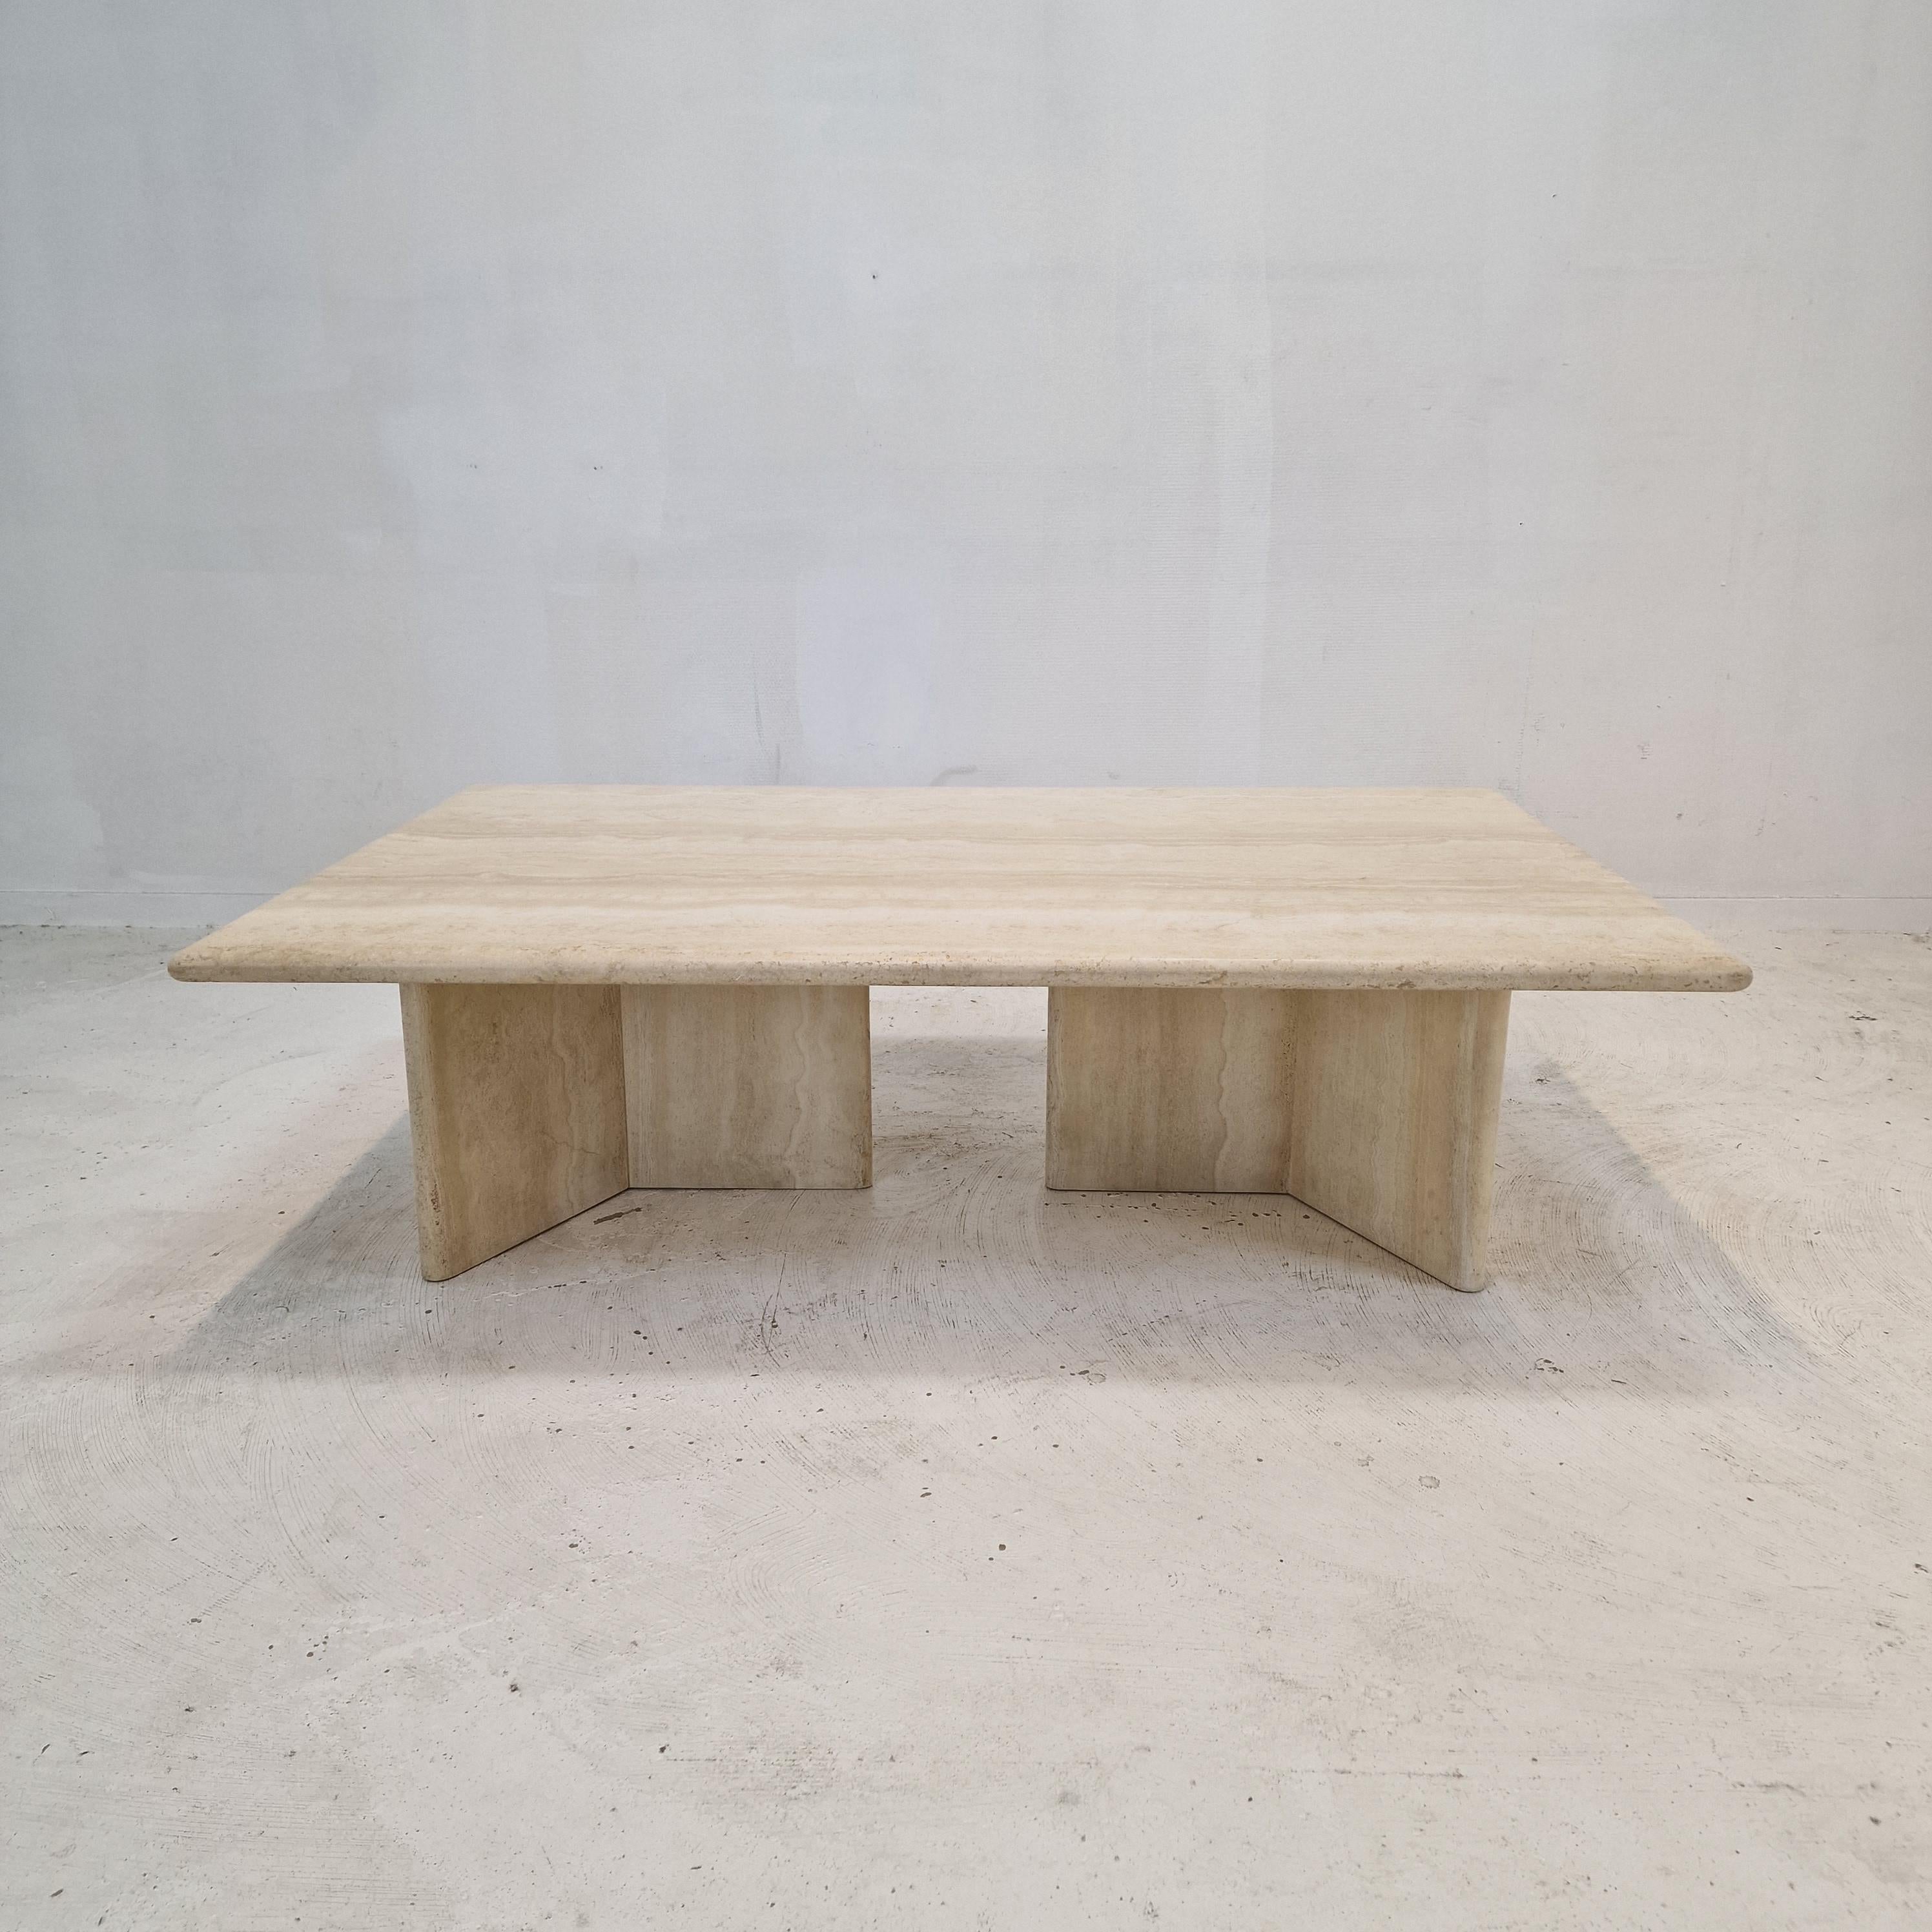 Superbe table basse italienne fabriquée à la main en travertin, années 1980.

Le magnifique plateau rectangulaire est arrondi sur le bord. 
Il est fait d'un magnifique travertin.
Veuillez prendre note des très beaux motifs.

Il possède deux très